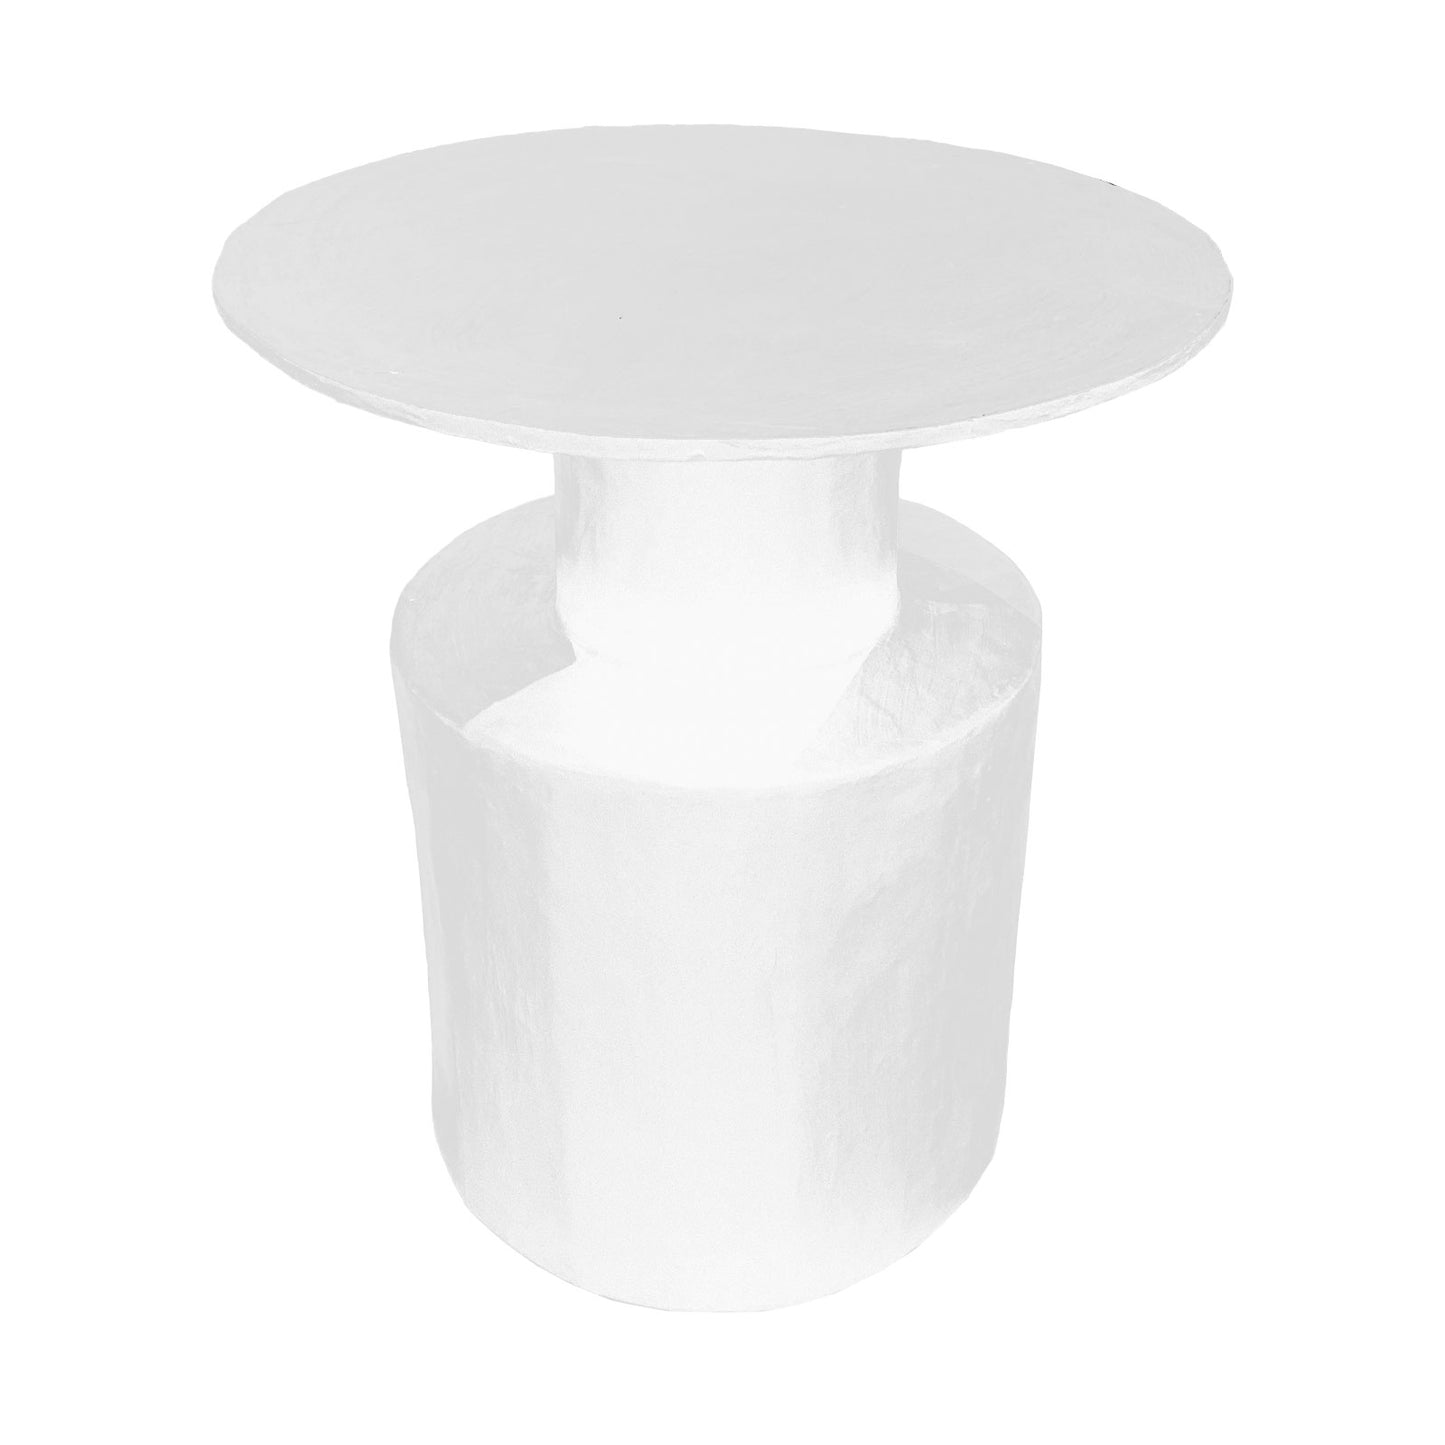 Top Hat Papier-mâché Side Table in White